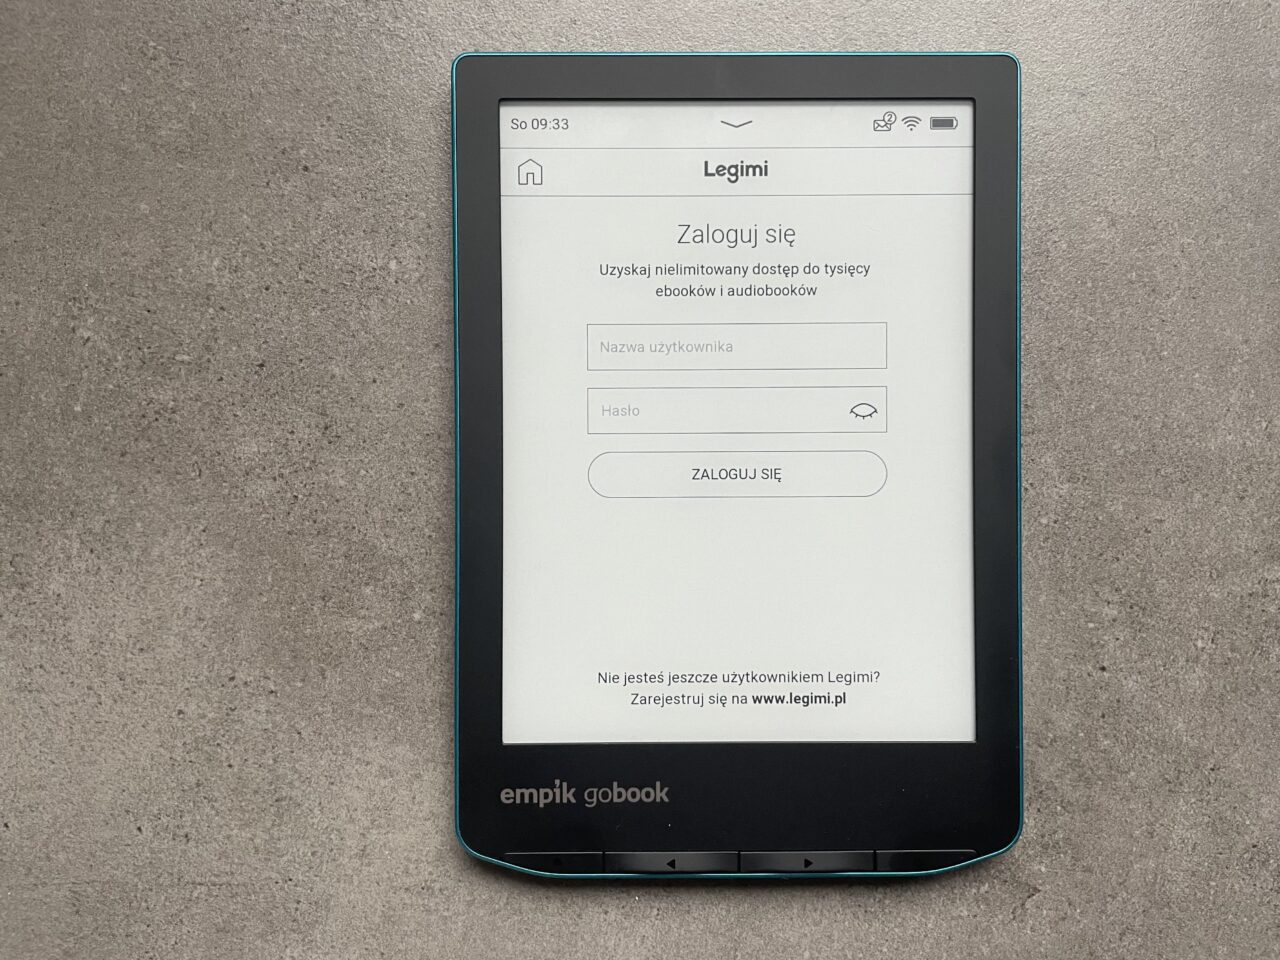 Czytnik e-booków leżący na szarym tle z ekranem wyświetlającym stronę logowania do serwisu Legimi.